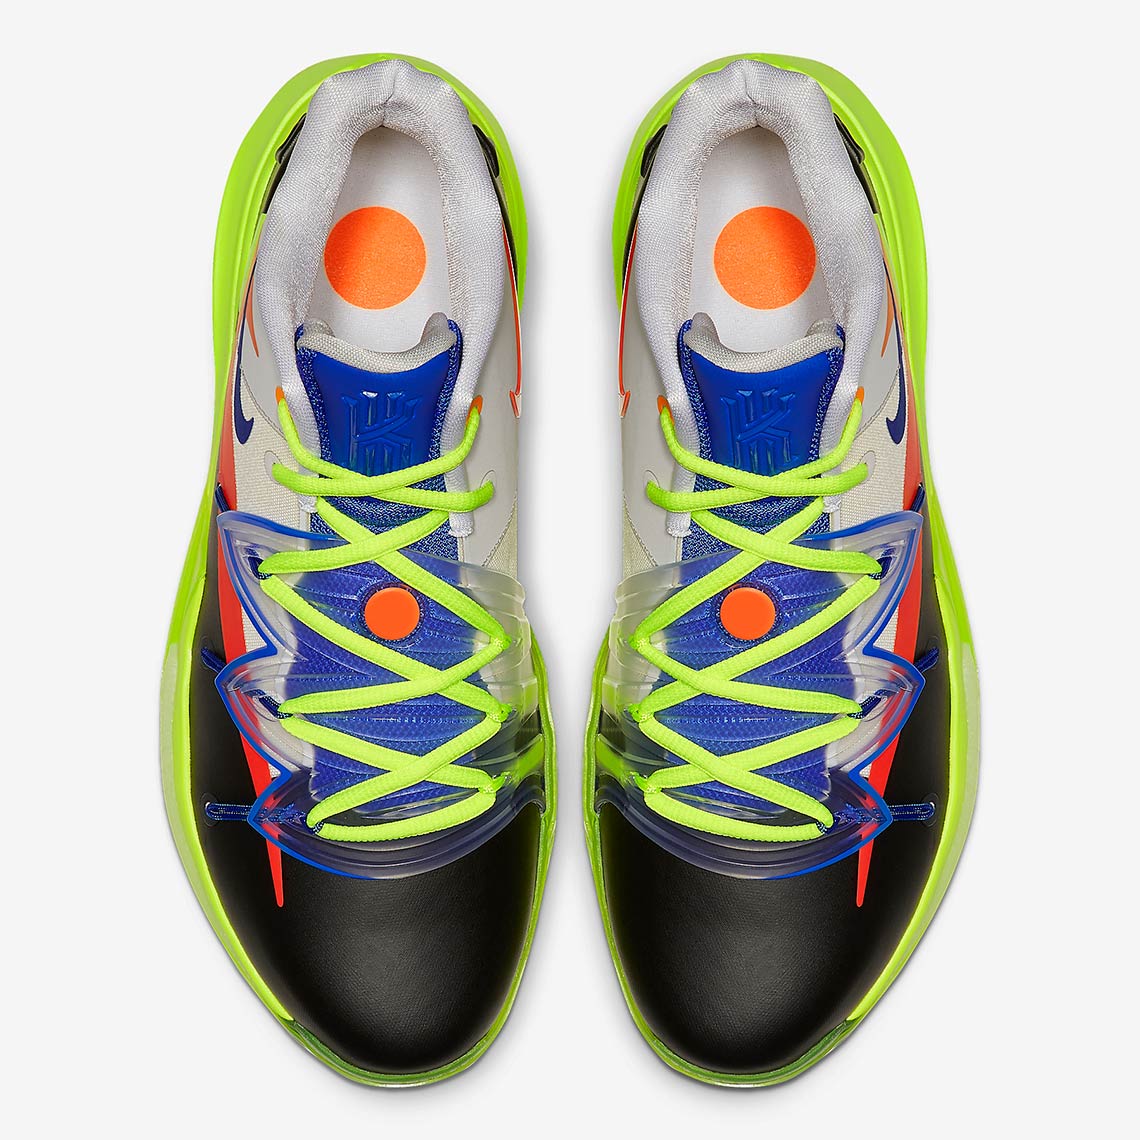 ROKIT Nike Kyrie 5 All-Star CJ7853-900 Release Date - SBD